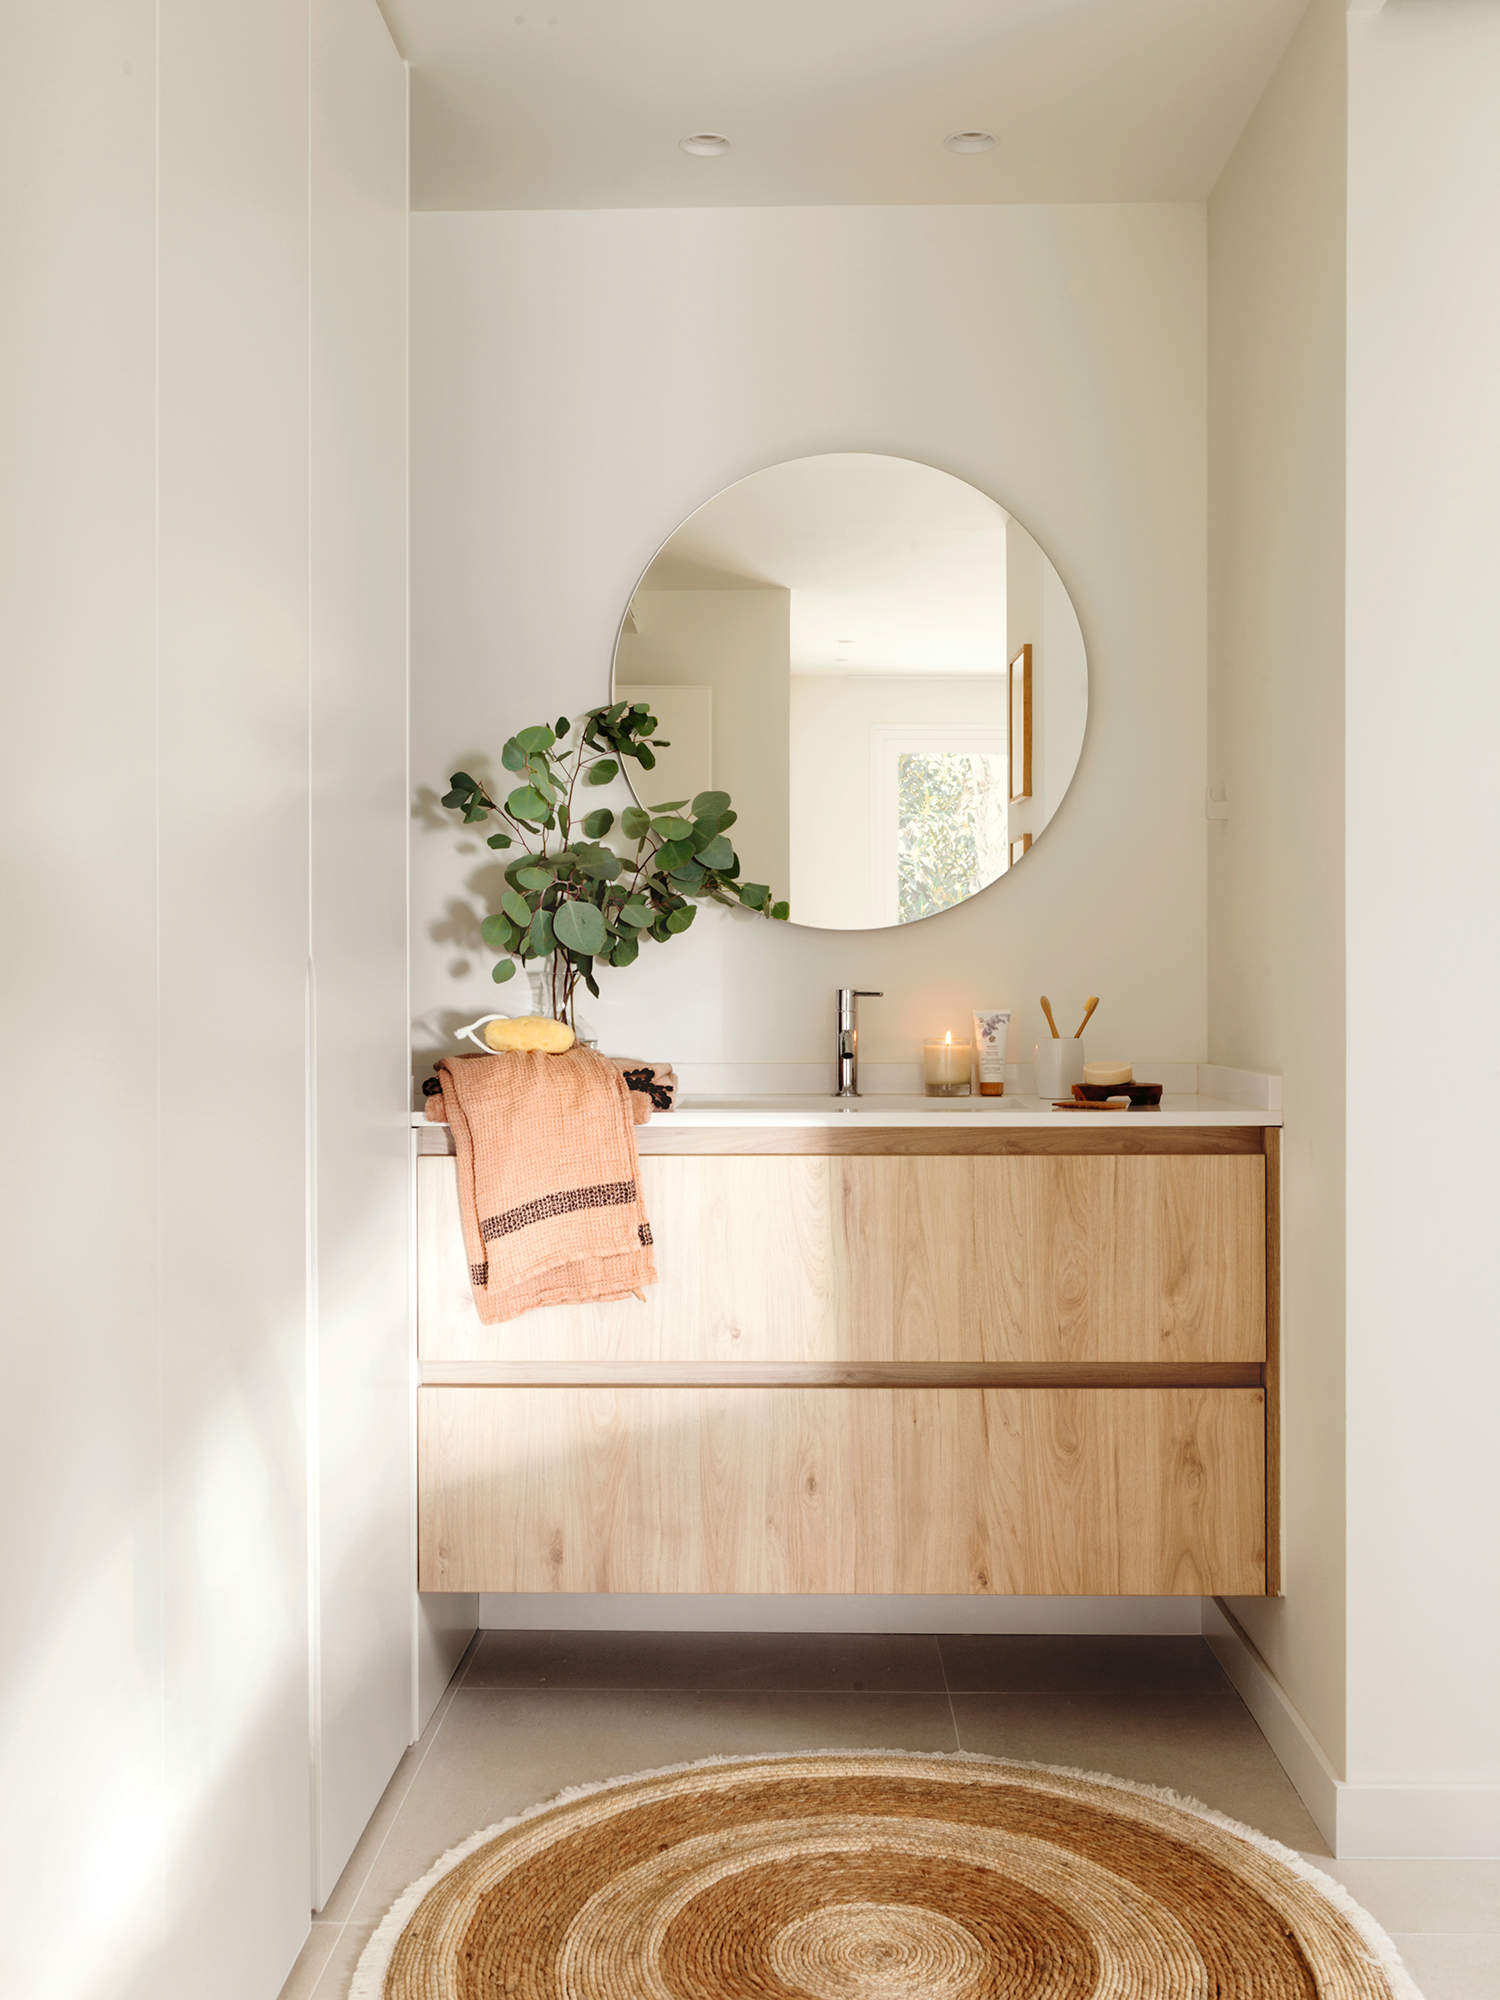 Baño pequeño con mueble realizado a medida, espejo redondo, plantas y alfombra de fibra.